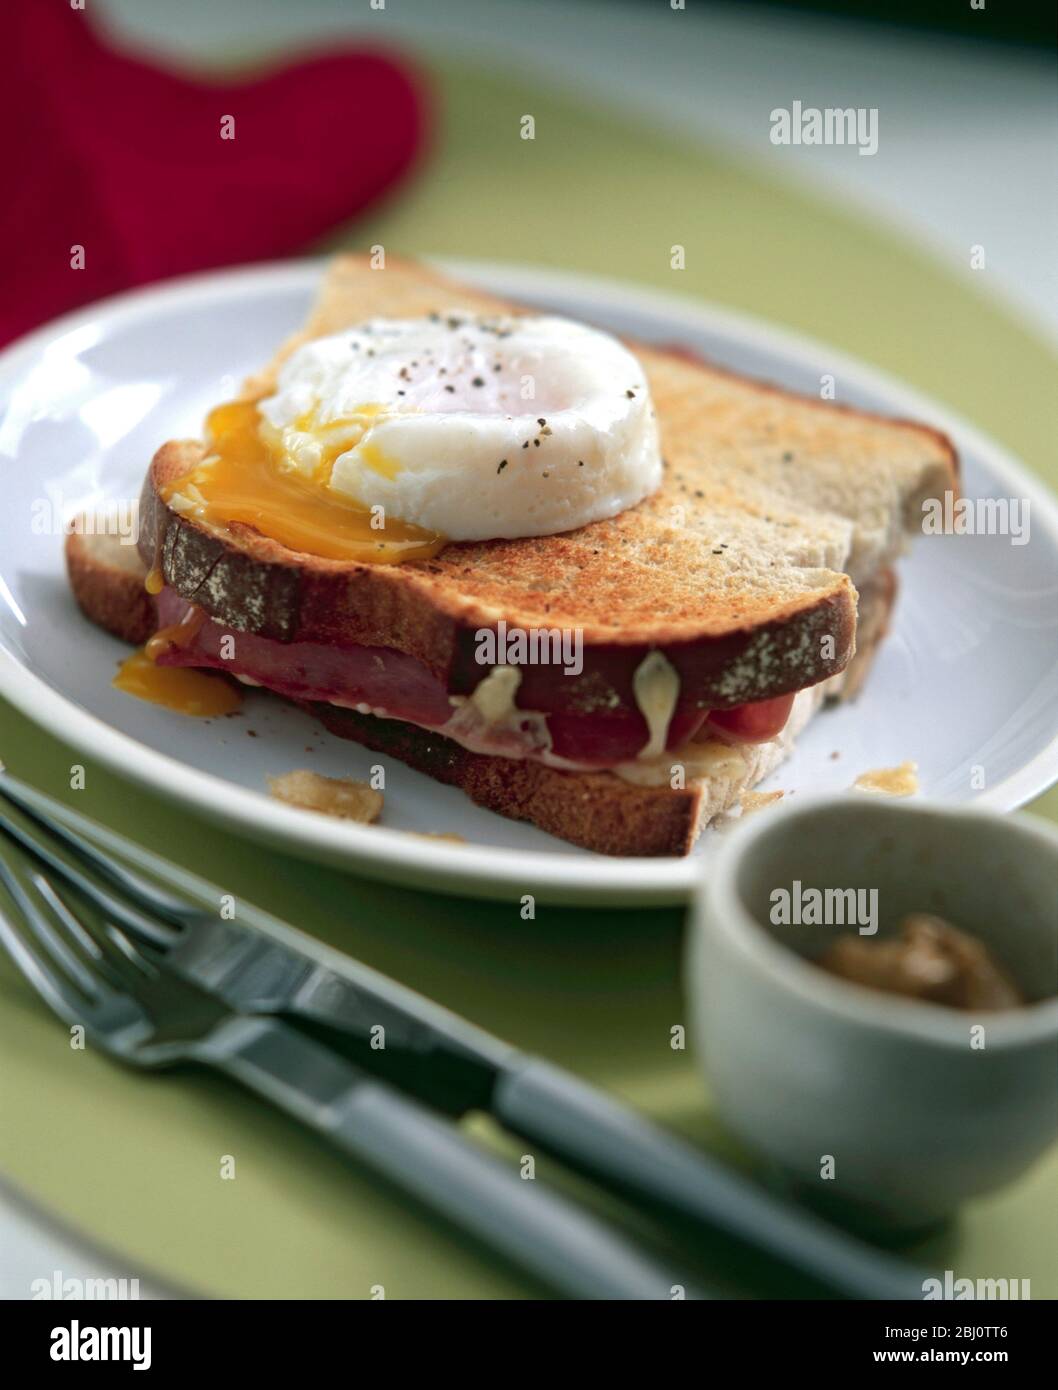 Croque monsieur, geröstetes Sandwich mit pochiertem Ei auf Toast - Stockfoto